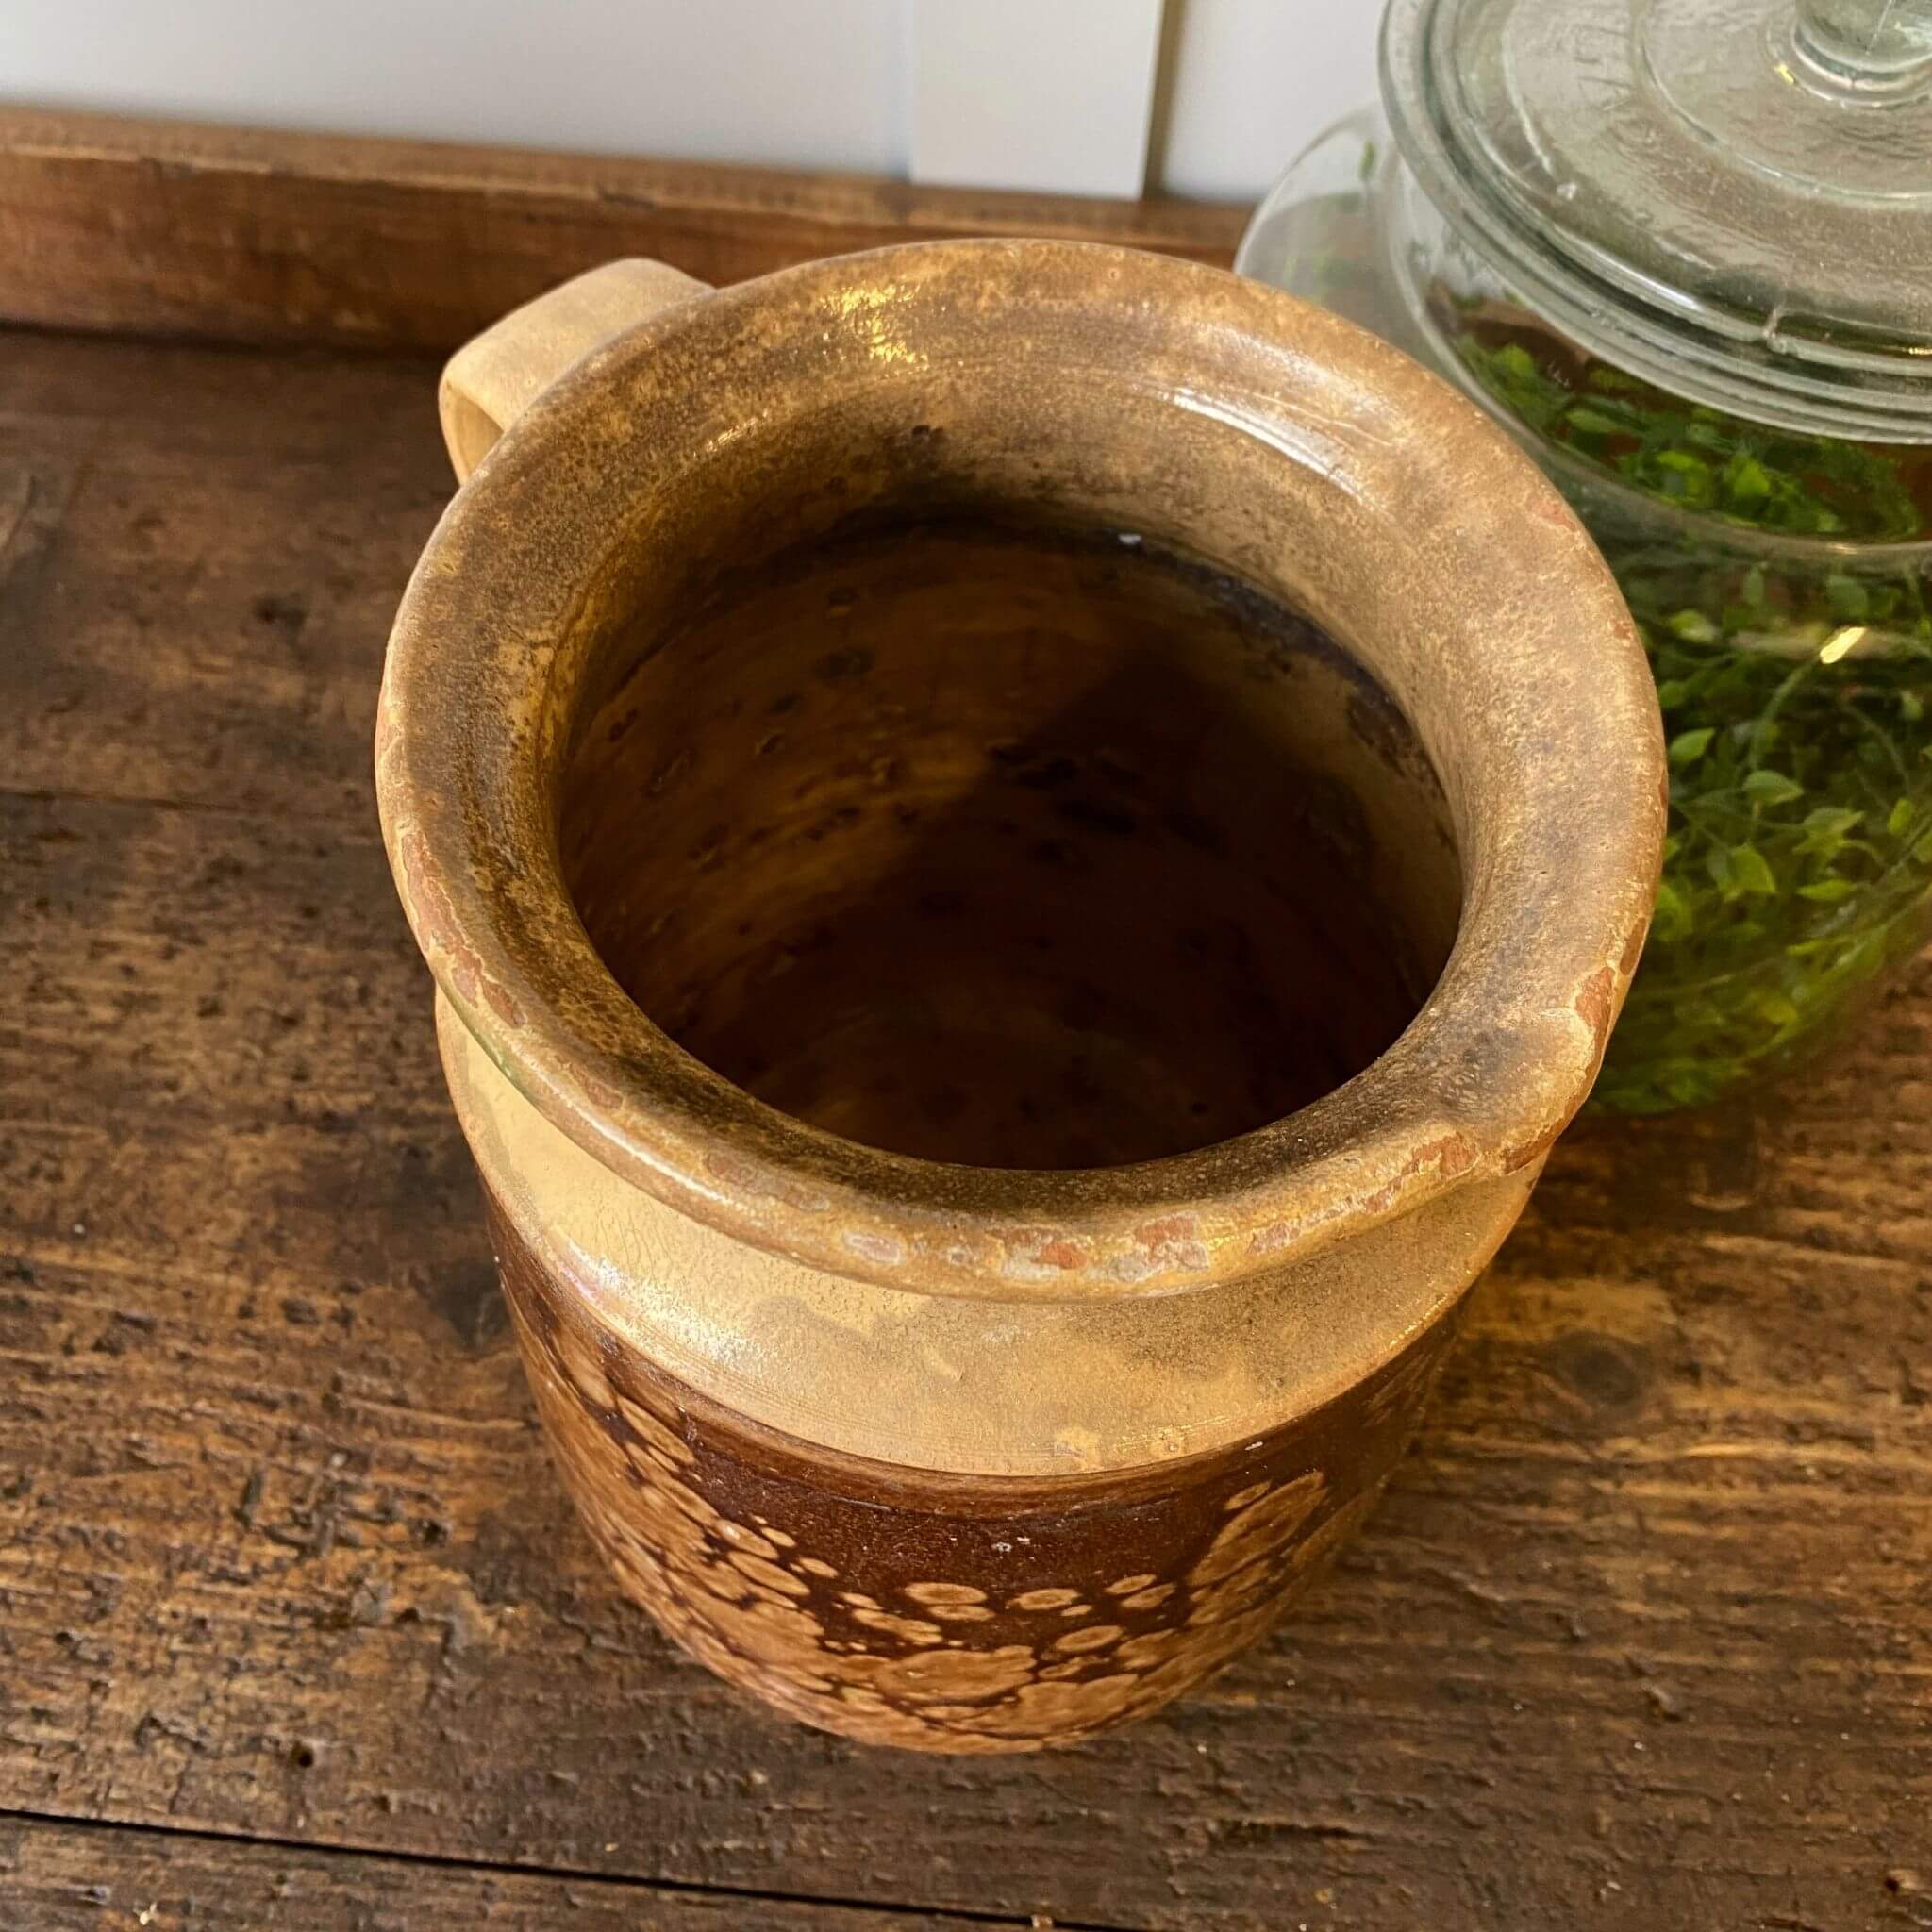 Top of brown vintage pot